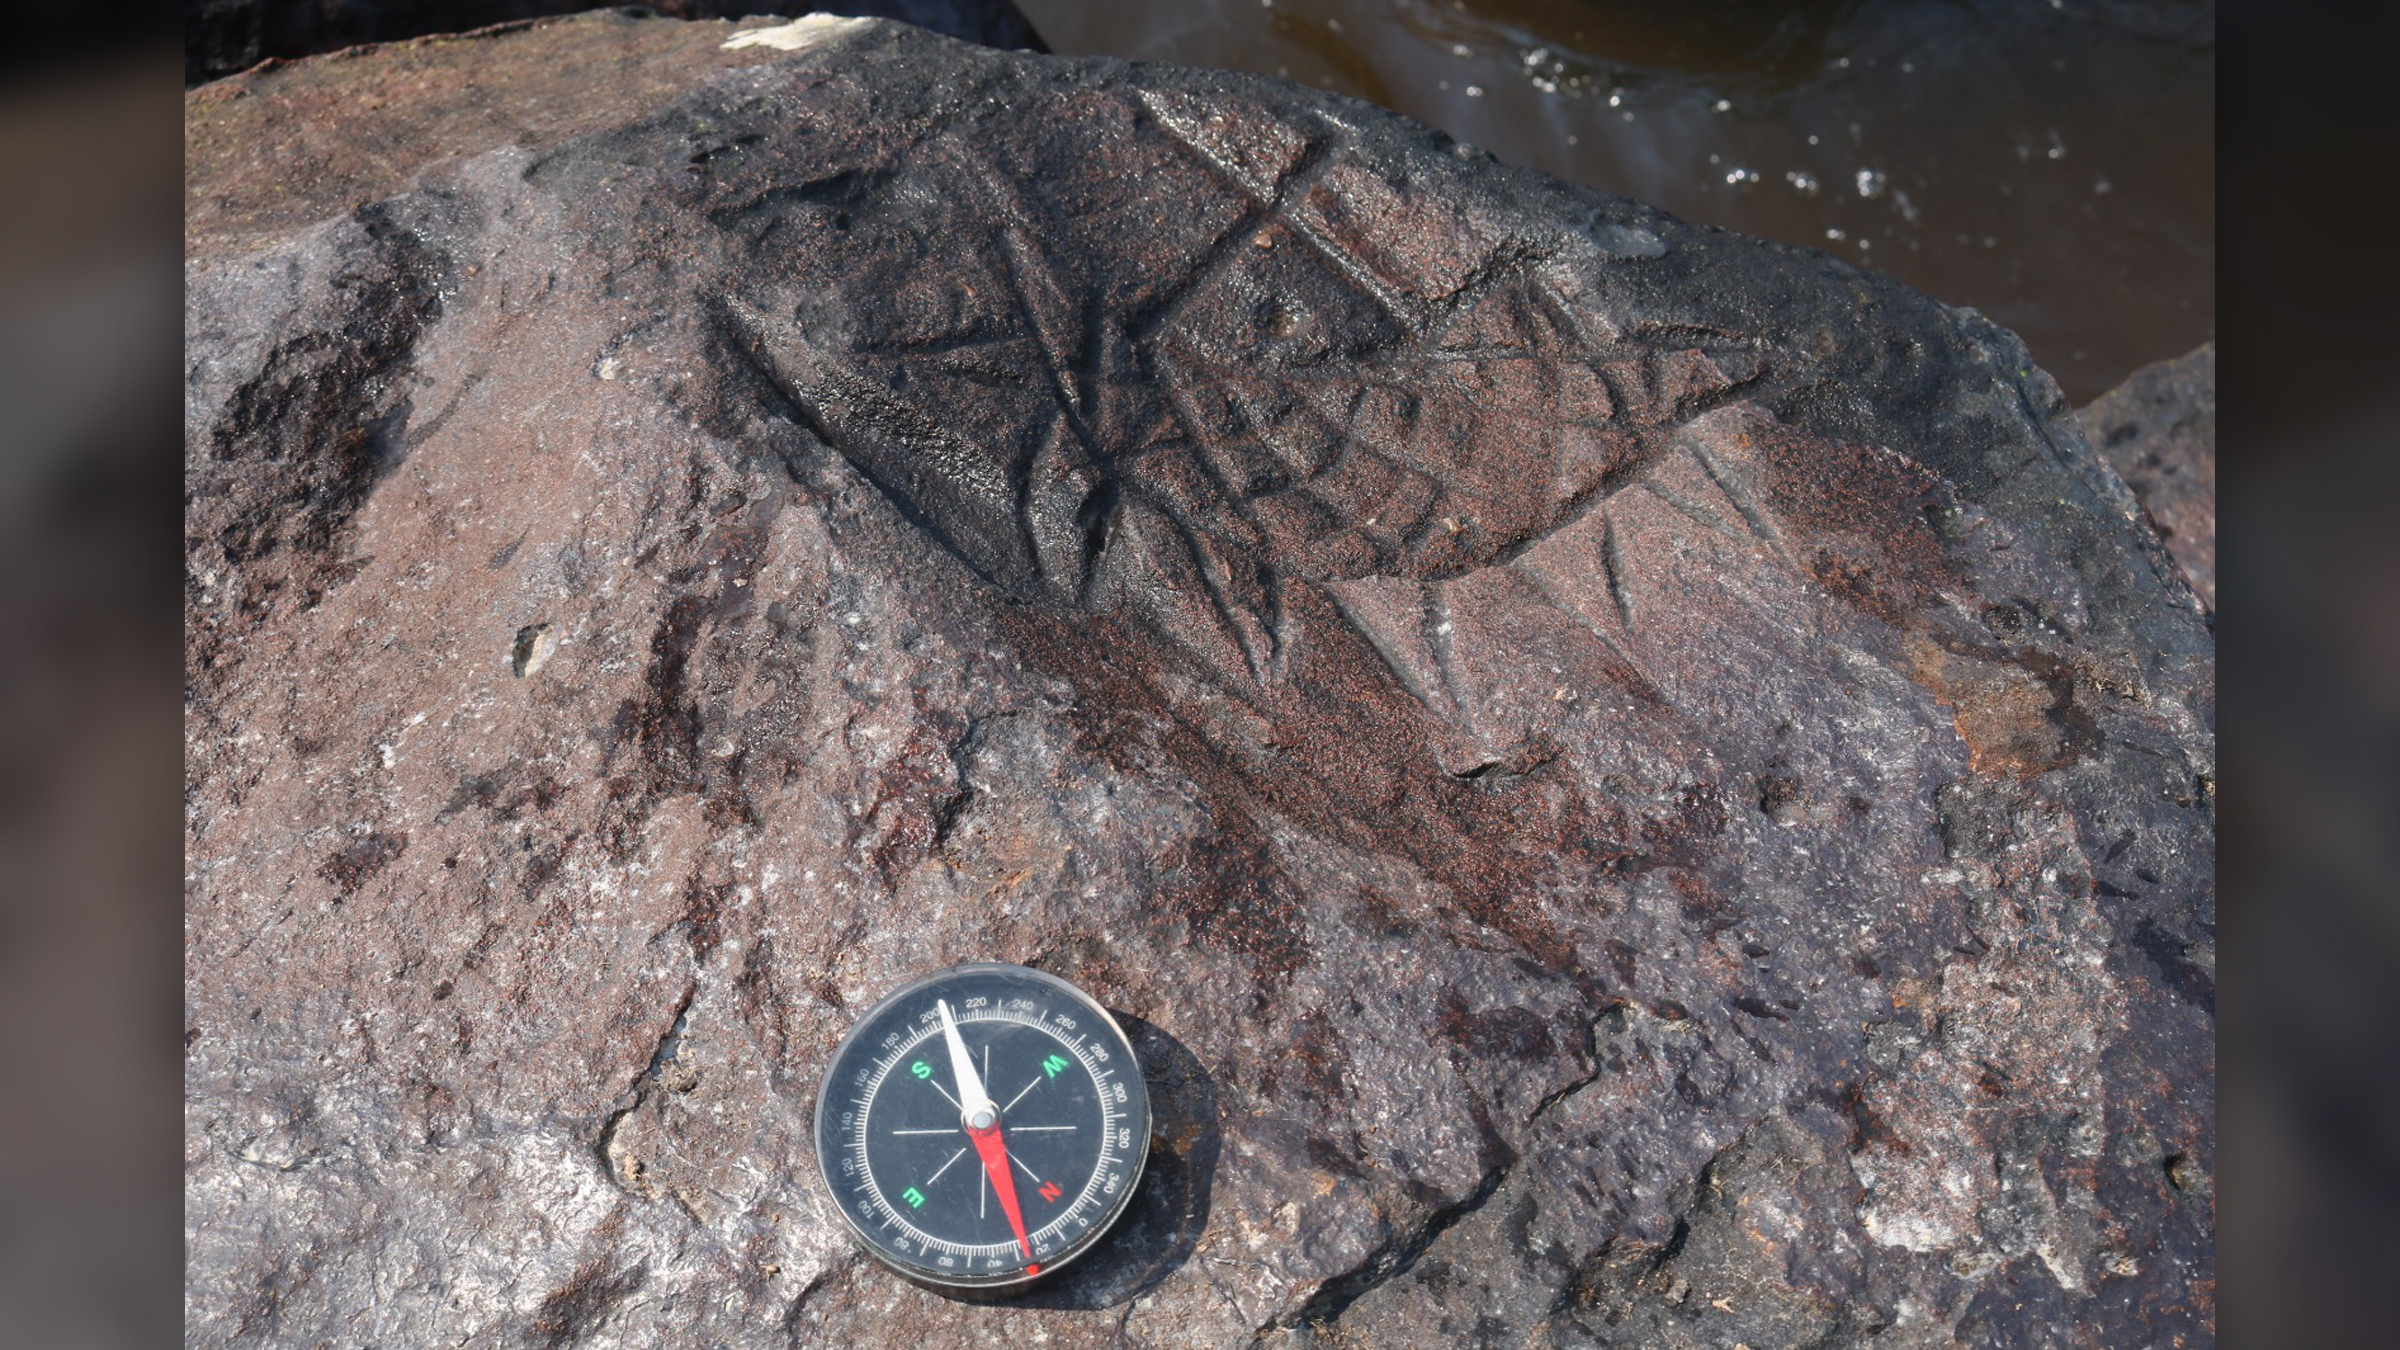 Този петроглиф е изработен преди 2000 години, според археолога Карлос Аугусто да Силва.